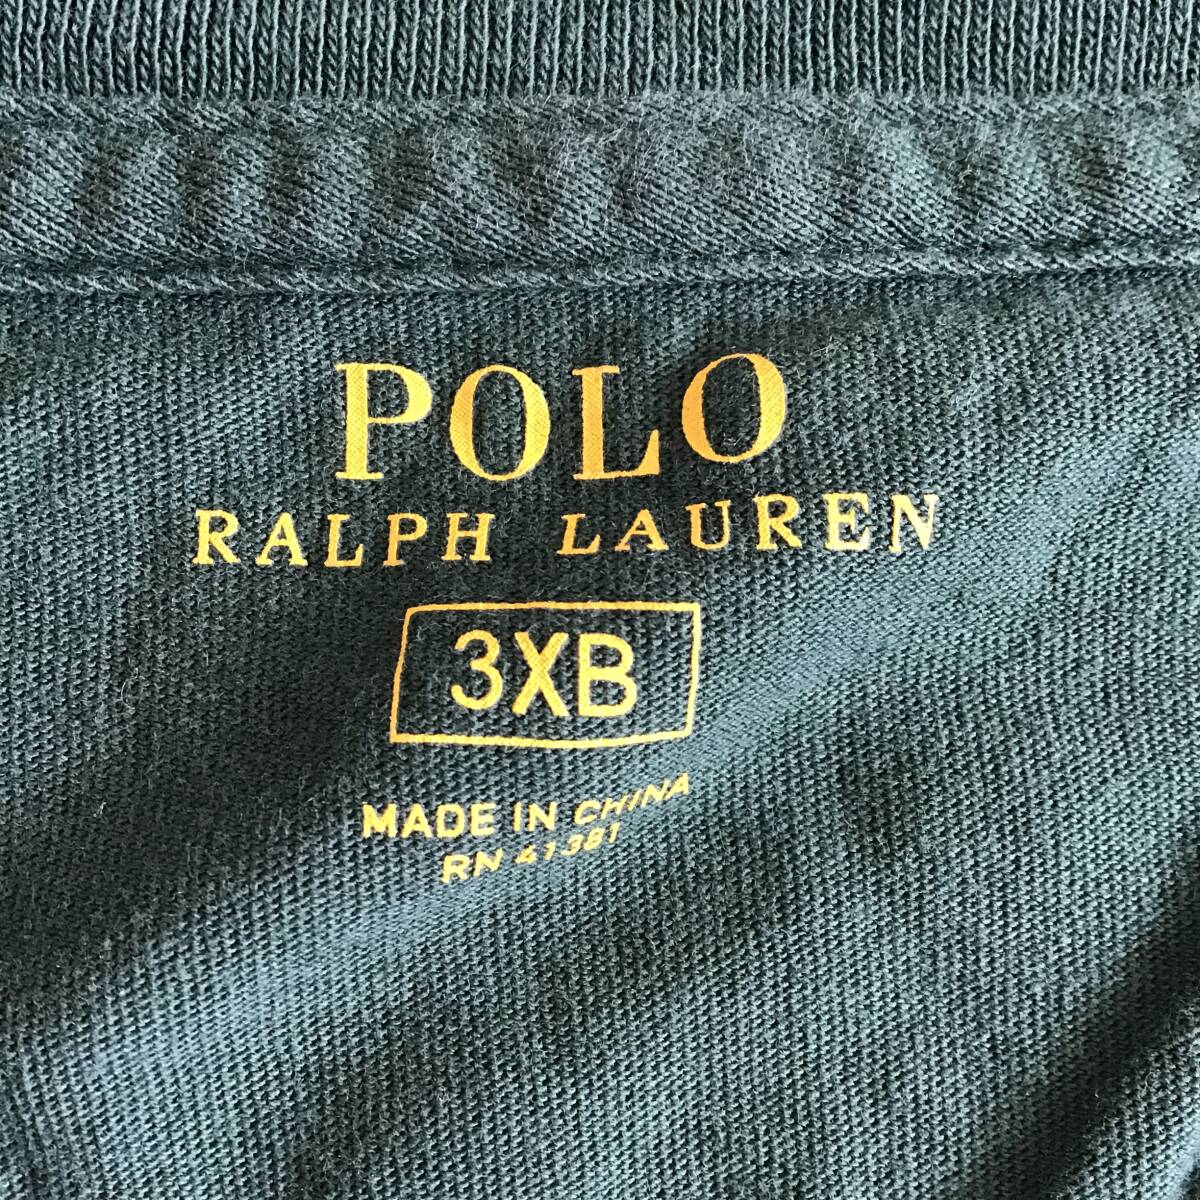 《 H 536》POLO Ralph Lauren ラルフローレン 半袖Tシャツ ワンポイント 3XB 大きいサイズ 緑 トップス 1円スタート アメリカ古着 古着卸の画像4